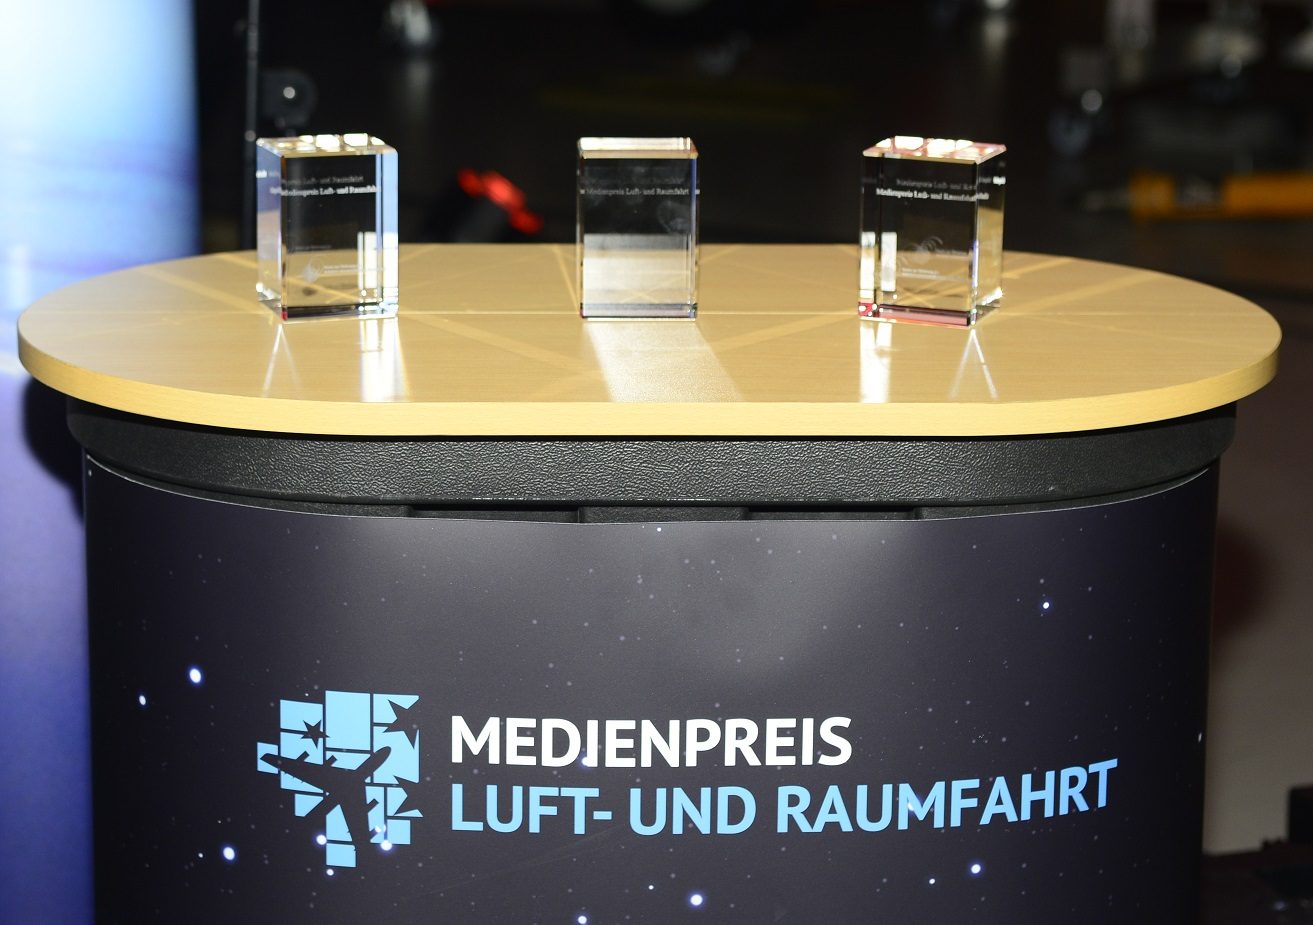 Medienpreis Luft- und Raumfahrt 2019: Jury nominiert die besten Beiträge 